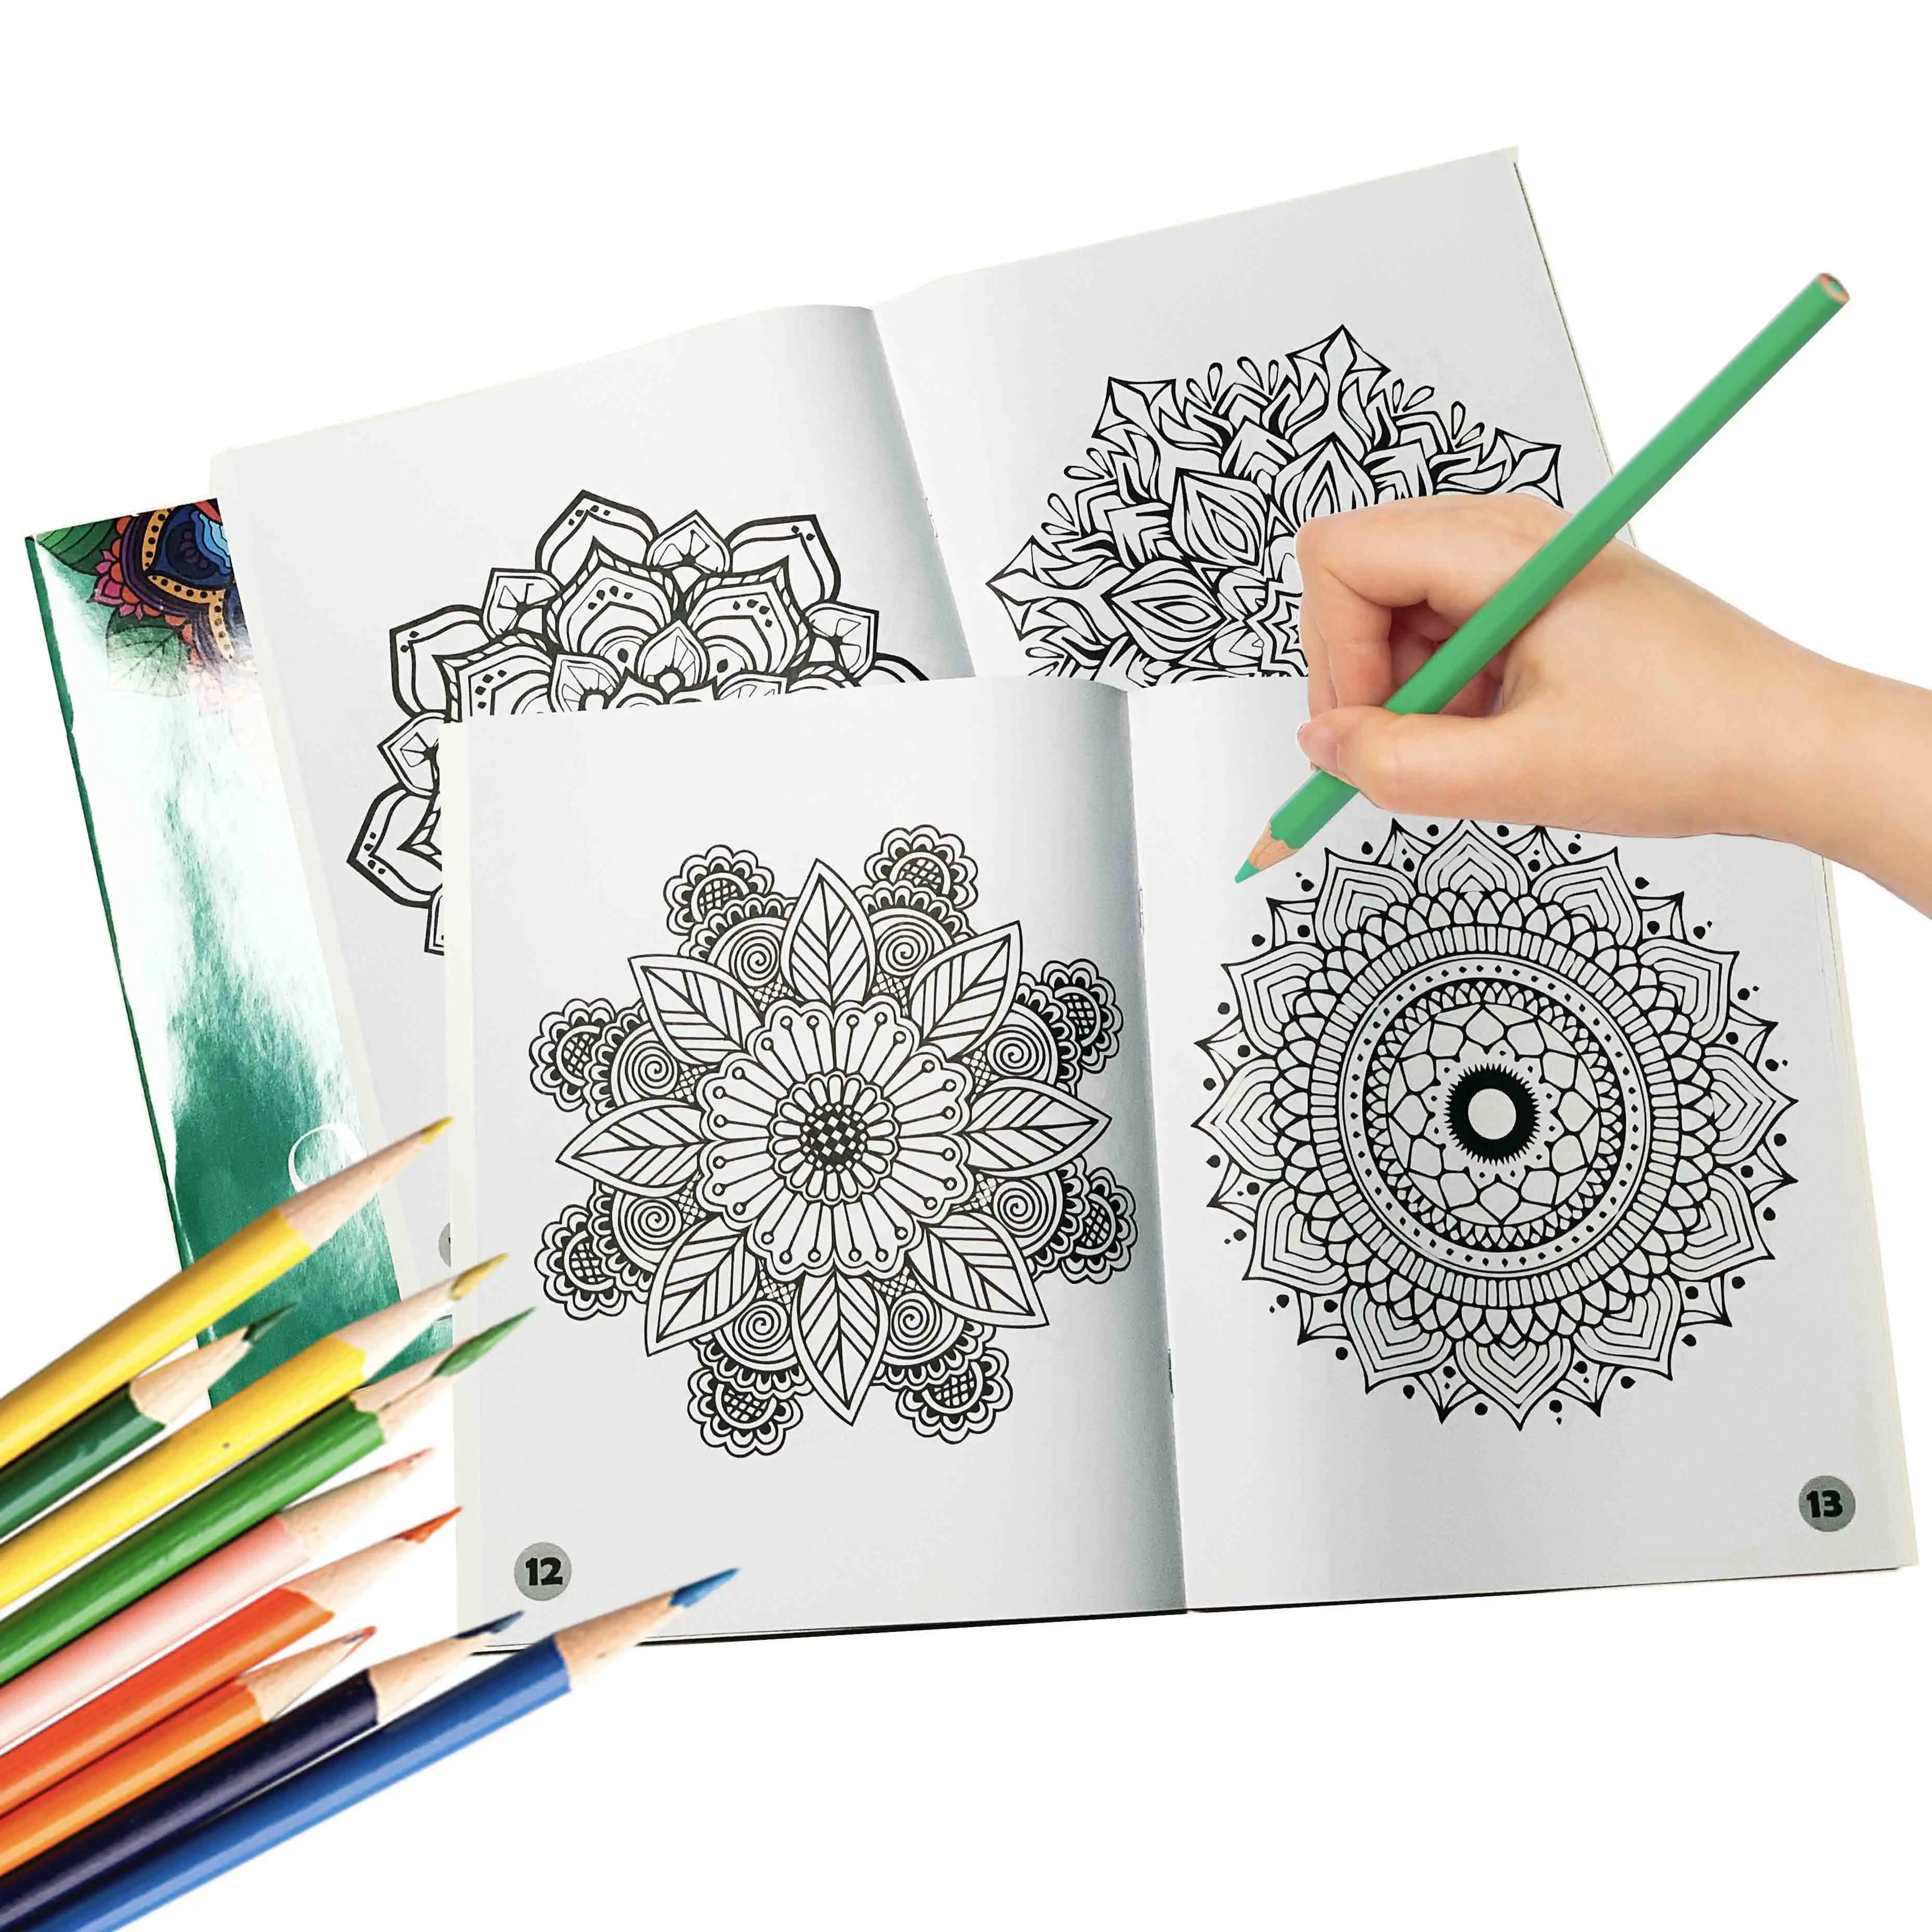 Venta al por mayor de calidad personalizada niños libro para colorear impresión para actividad folleto dibujo dibujado a mano impresión